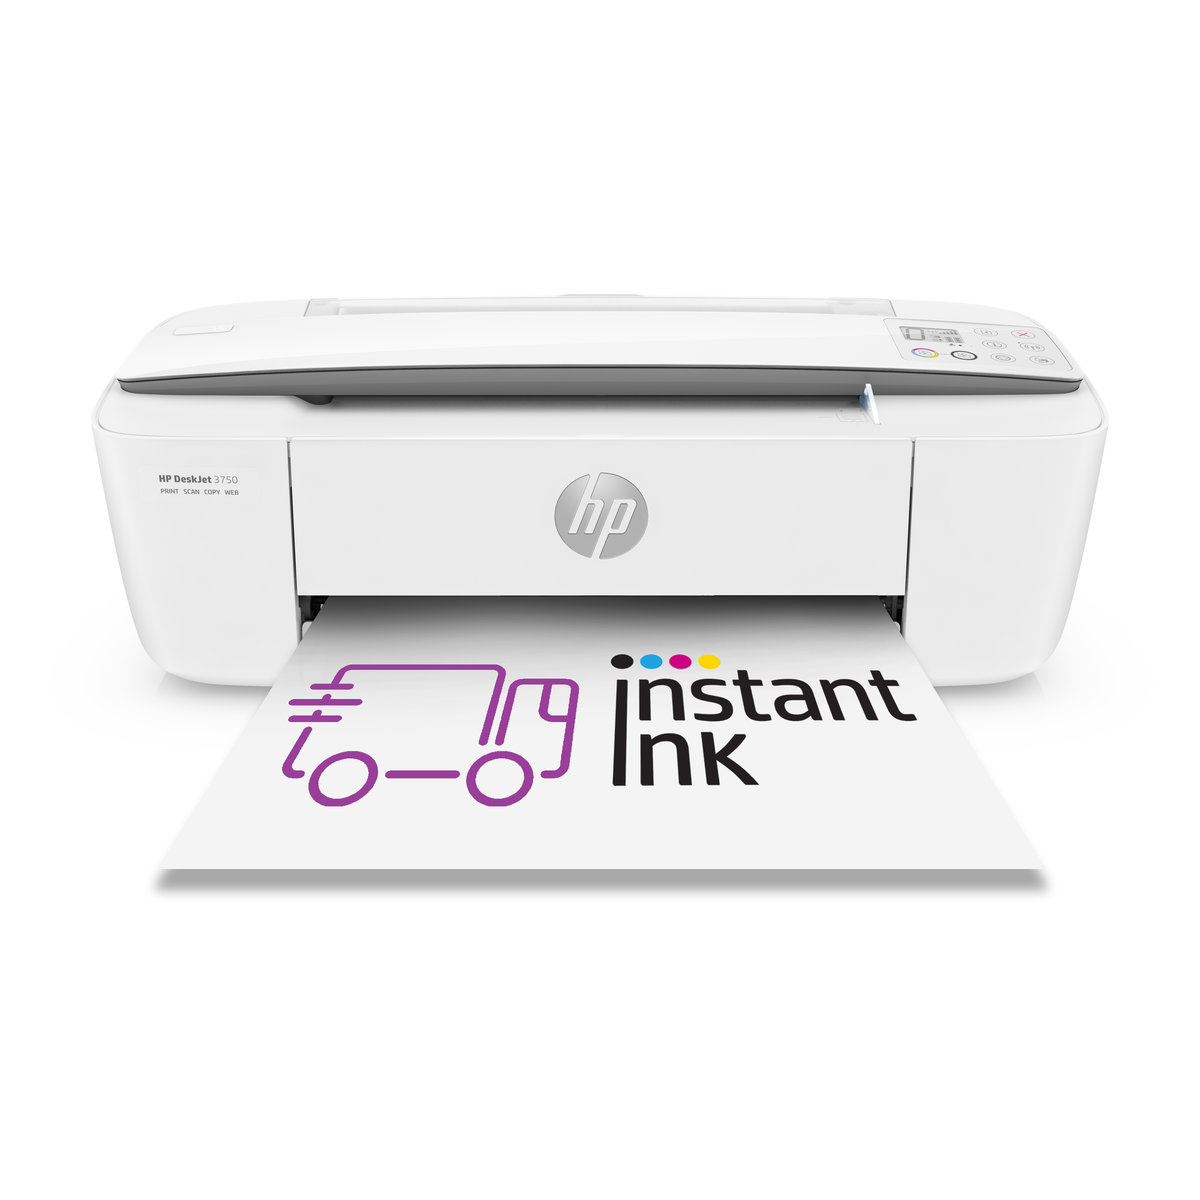 HP DeskJet 3750 - HP Instant Ink ready (T8X12B)